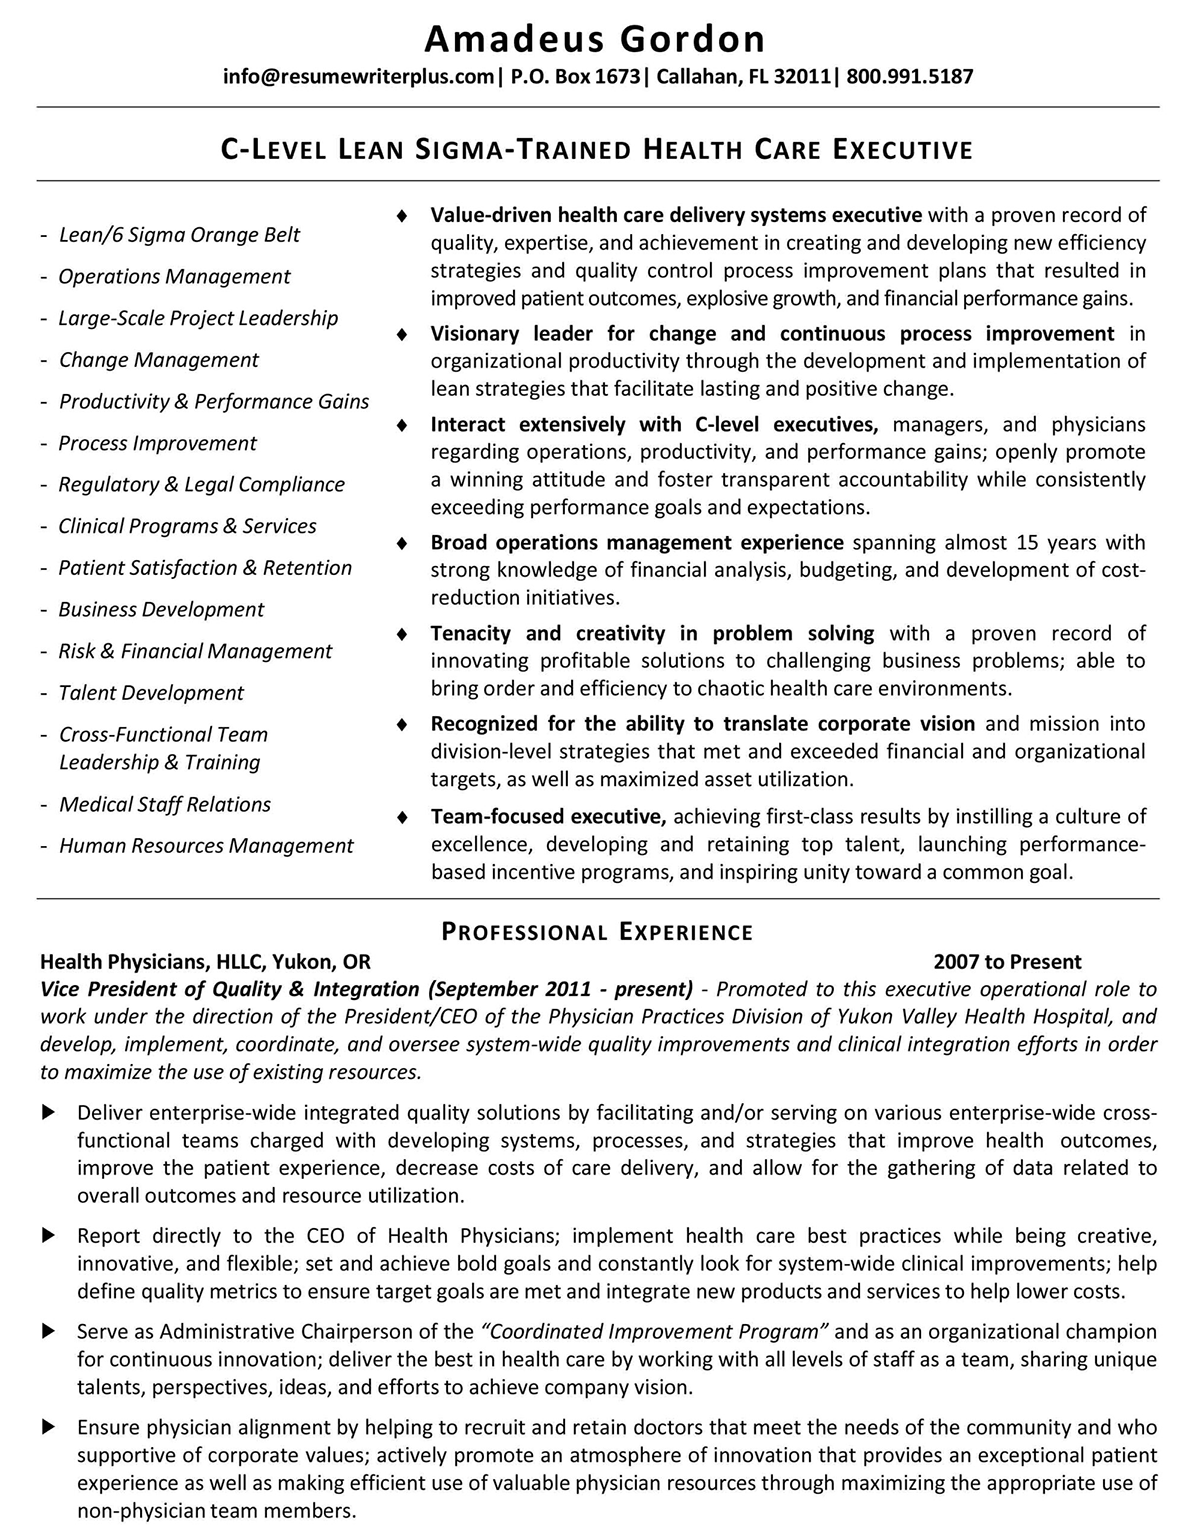 C-Level-Lean-Sigma-Trained-Health-Care-Executive-Resume-1